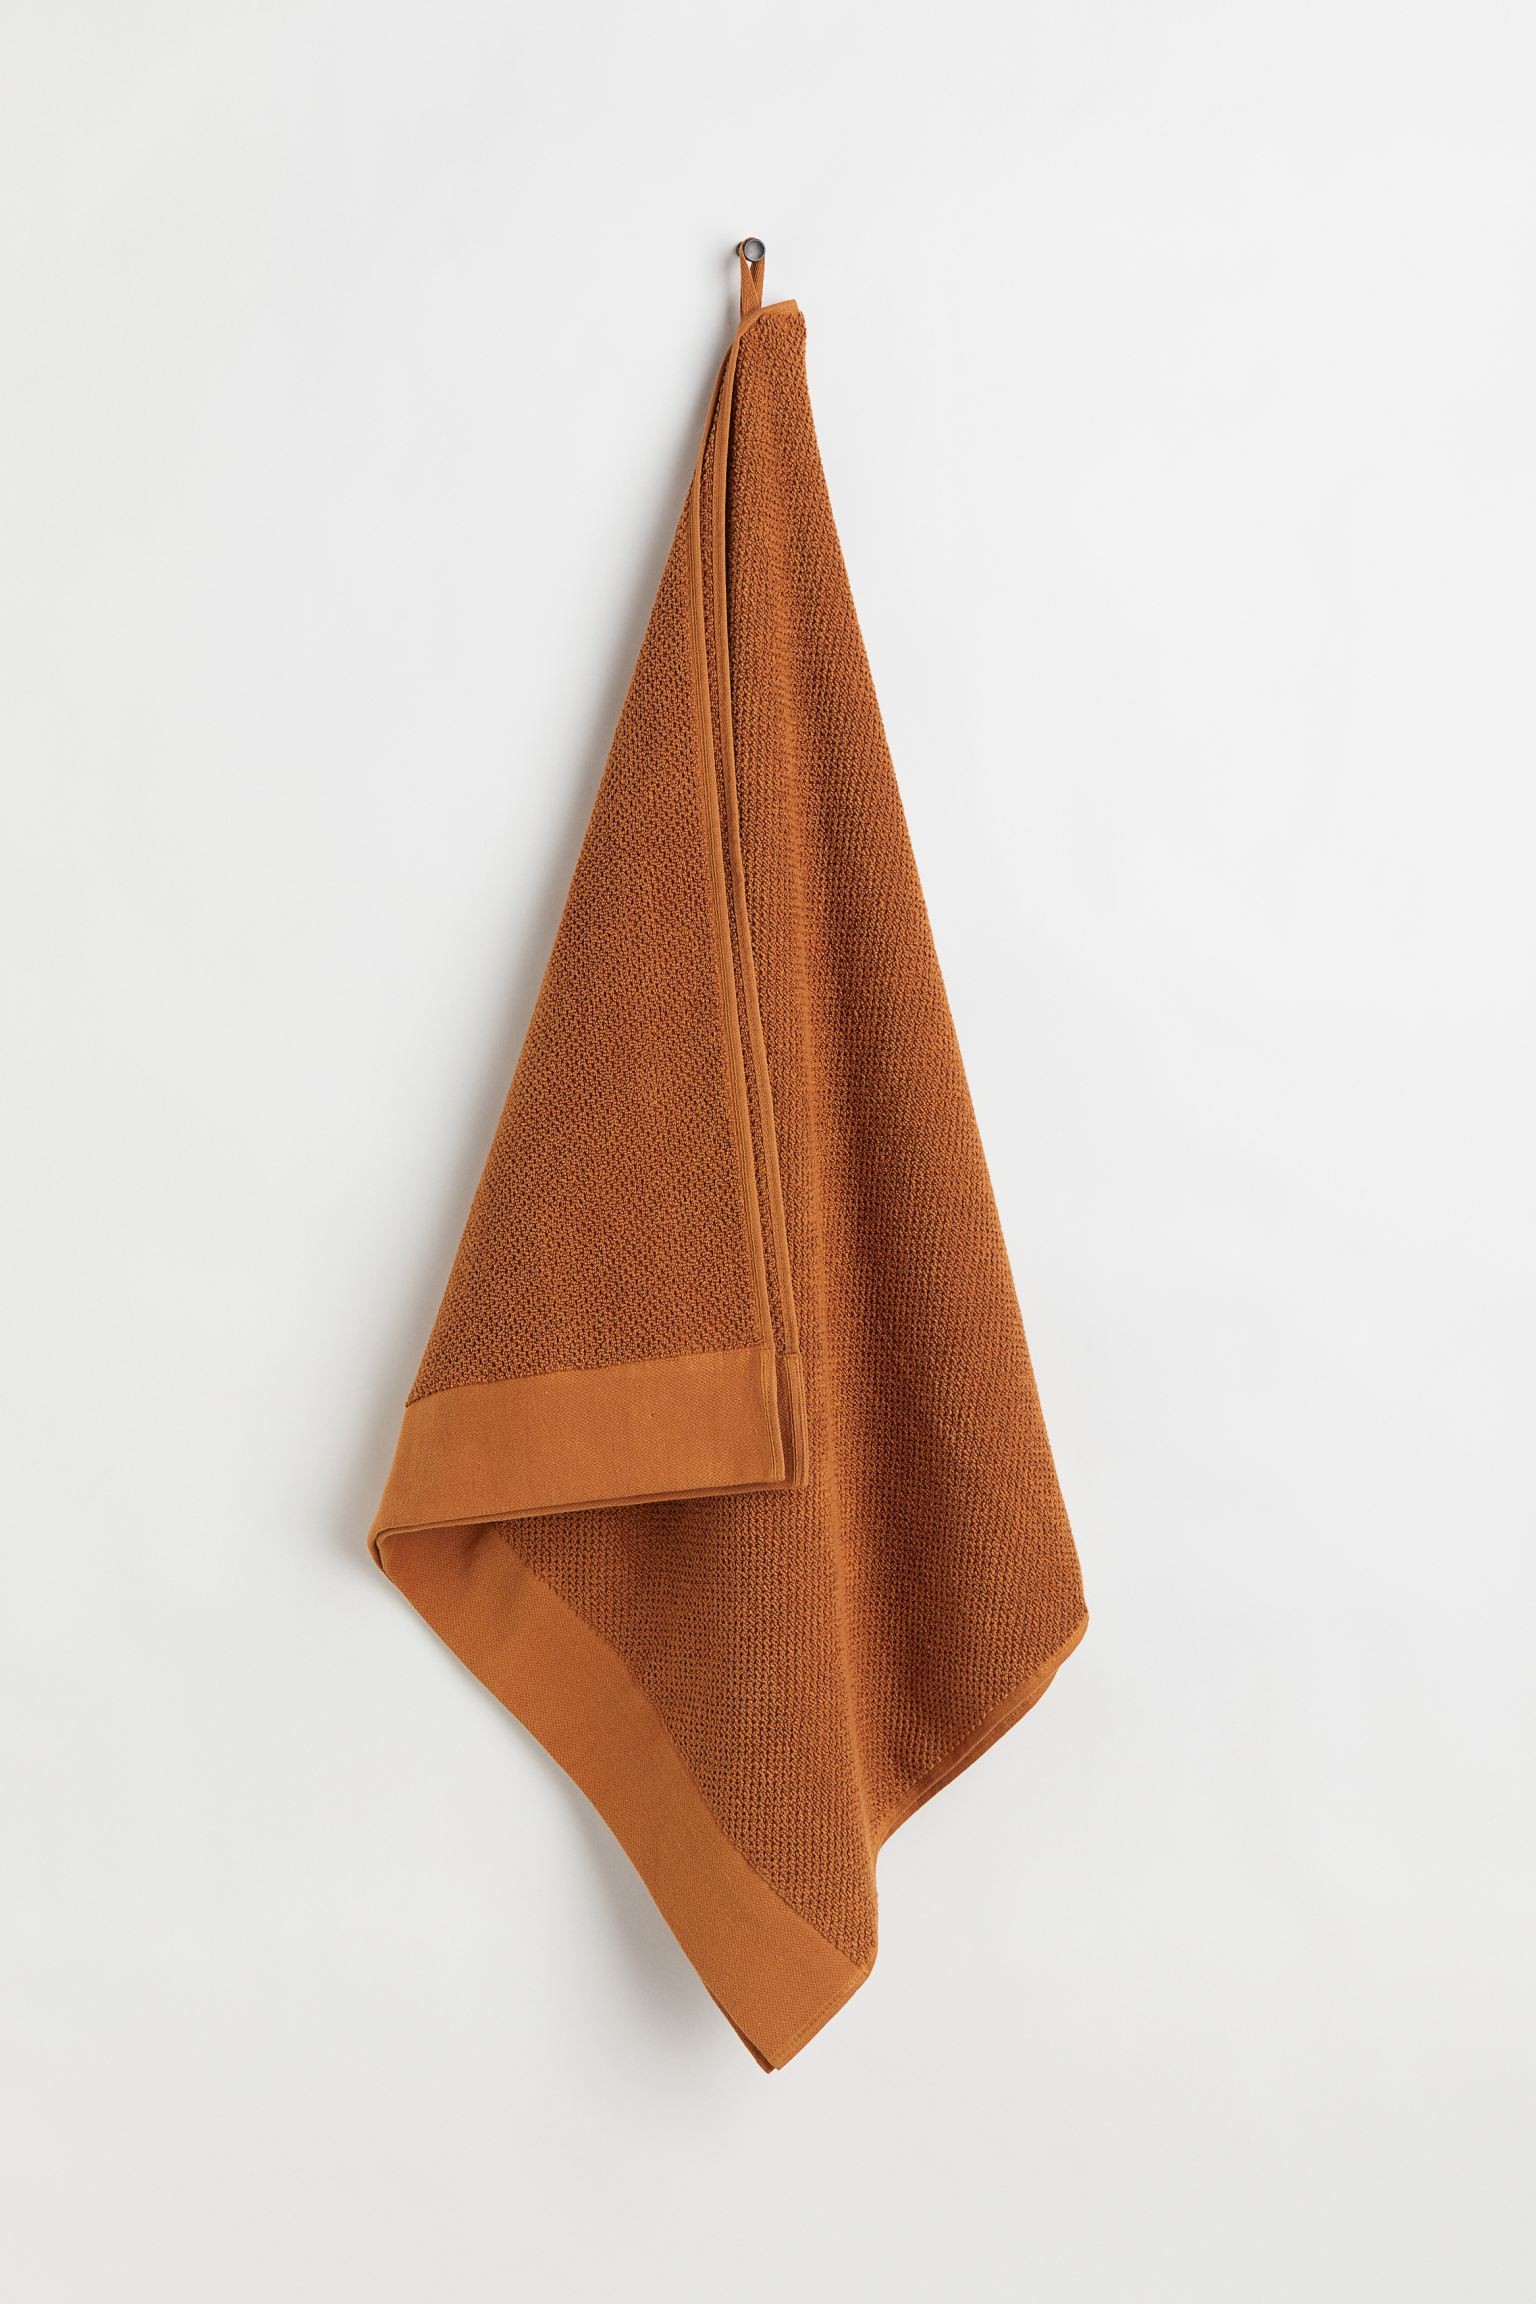 Махровое банное полотенце, Коньяк коричневый, 70x140